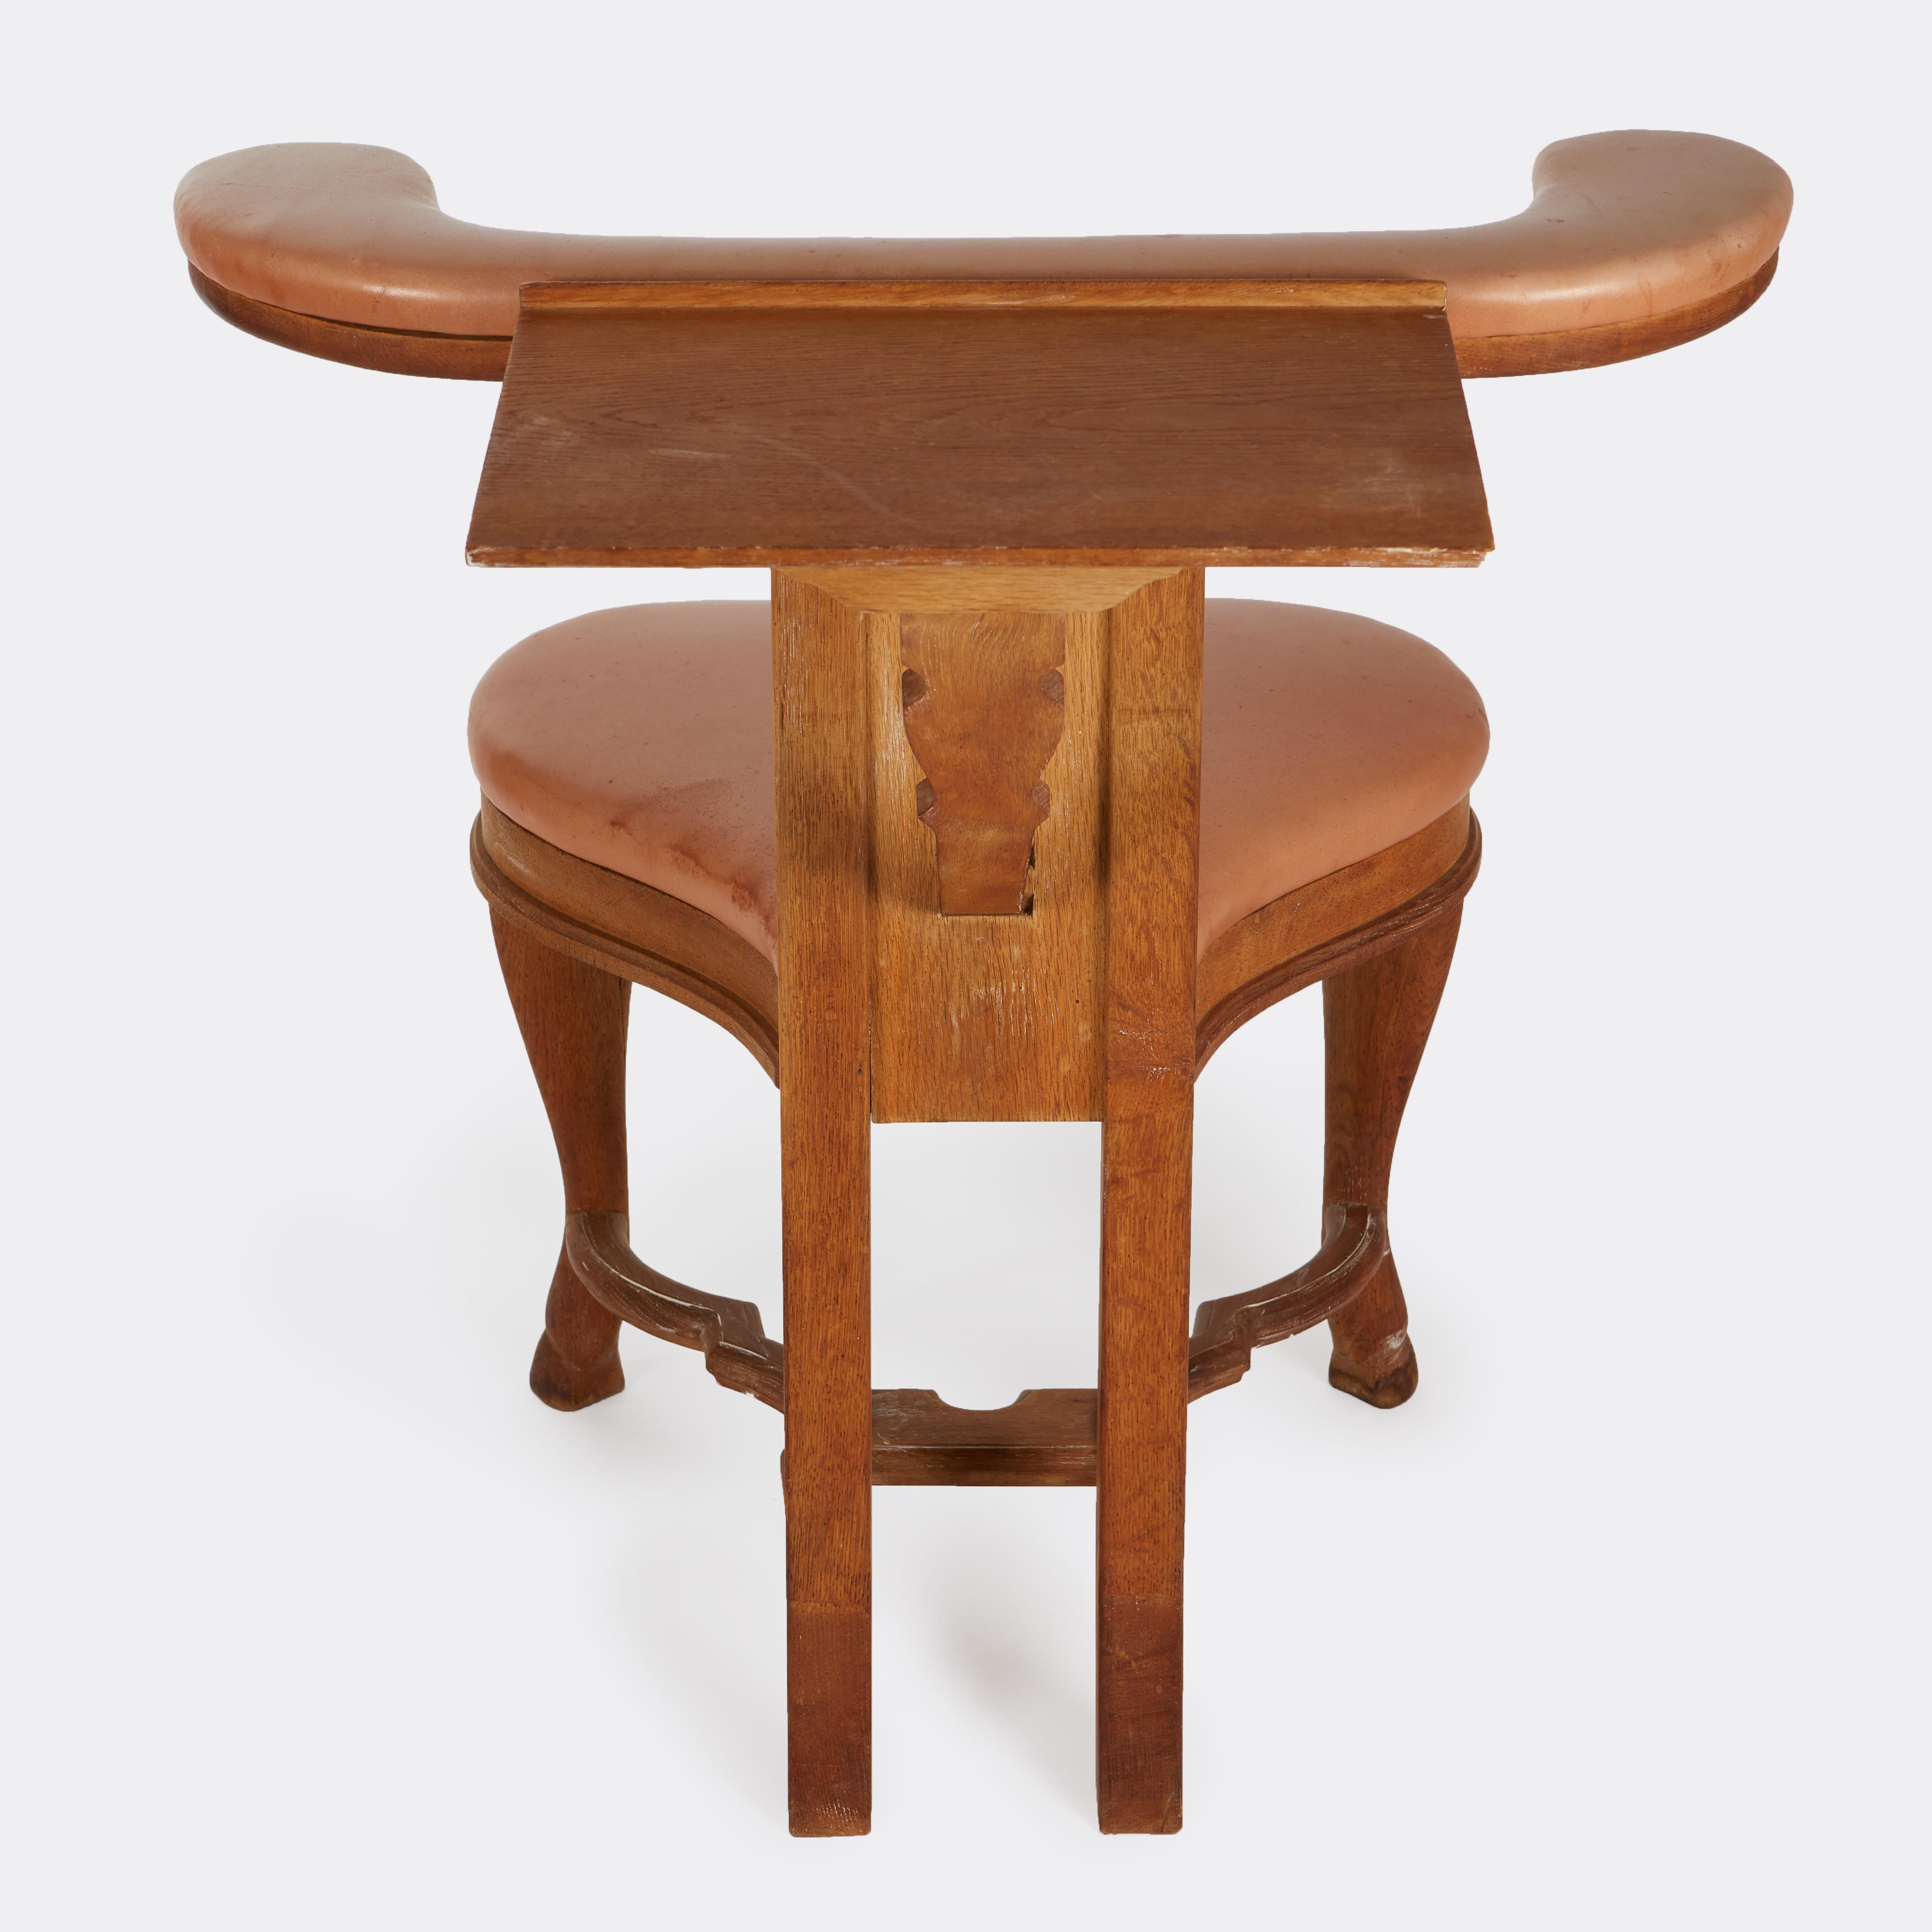 Fauteuil de lecture antique en bois dur avec surface pliante au dos. Ce type de chaise servait à la fois de siège conventionnel et, si on l'enfourchait, la petite surface du dossier servait de bureau de lecture ou d'écriture.